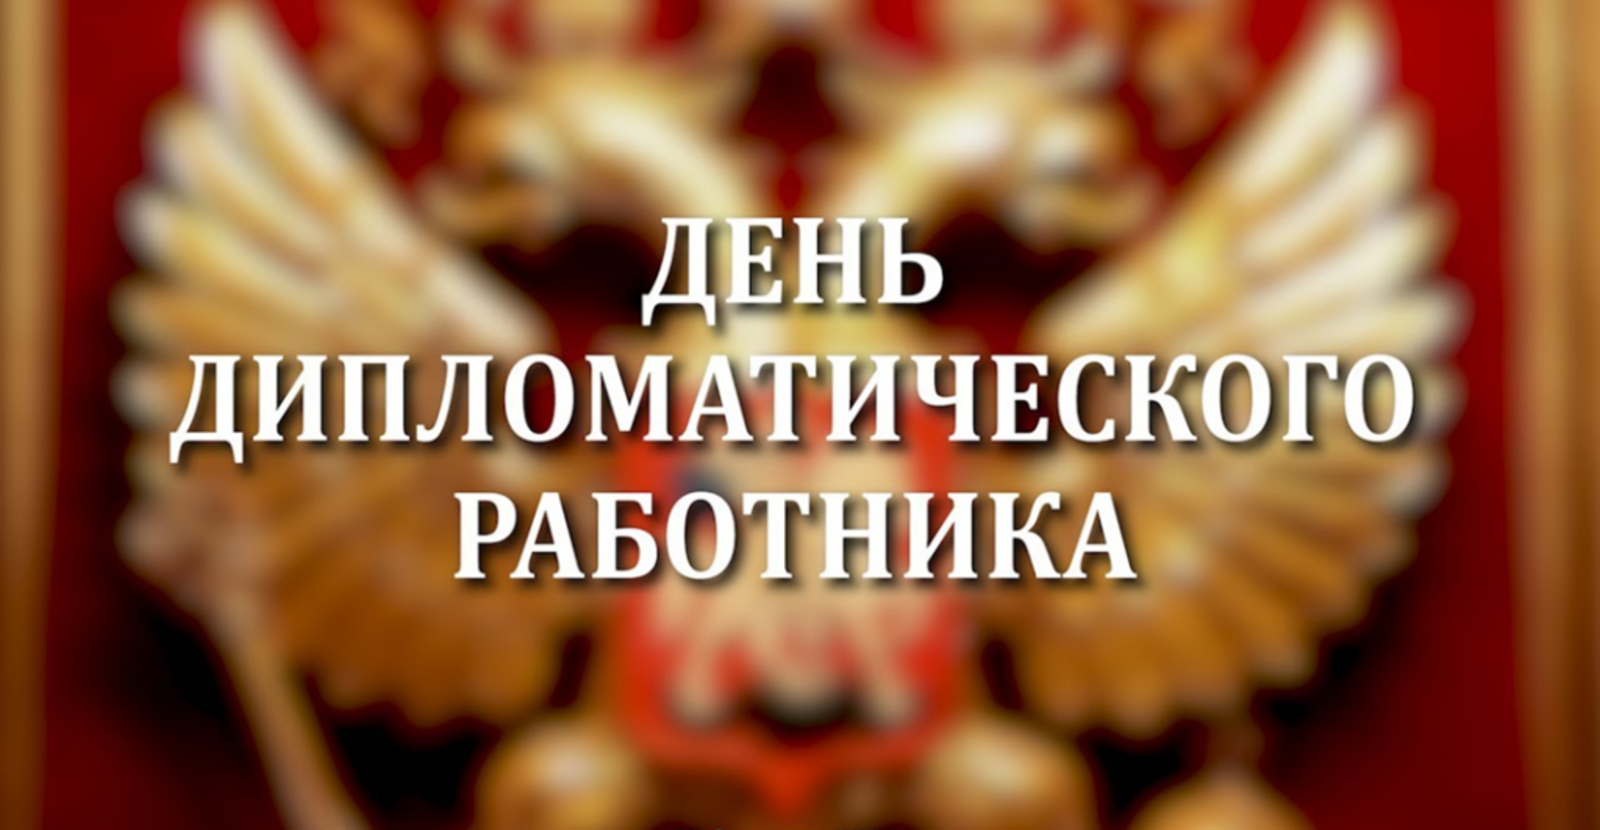 10 февраля в Российской Федерации  отмечается  день дипломатического работника